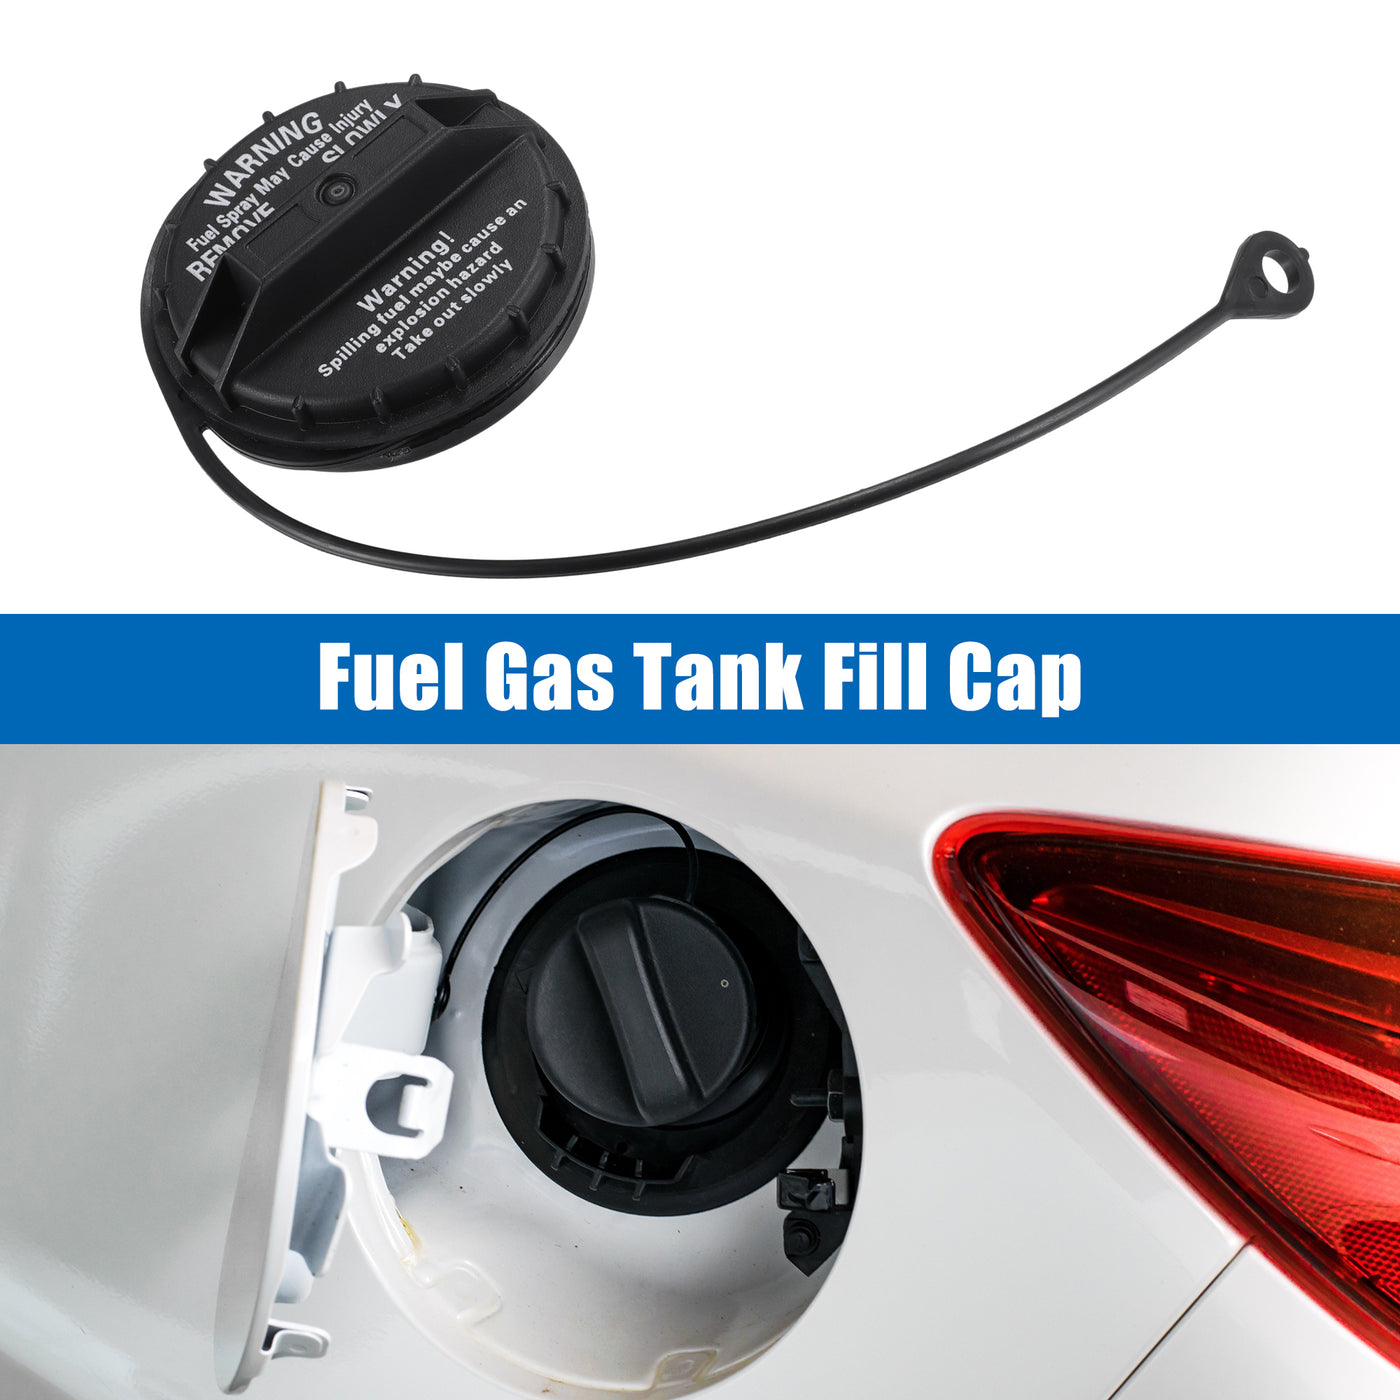 ACROPIX Fuel Gas Tank Fill Cap Fit for Subaru Legacy 2005-2009 No.42031AG00A - Pack of 1